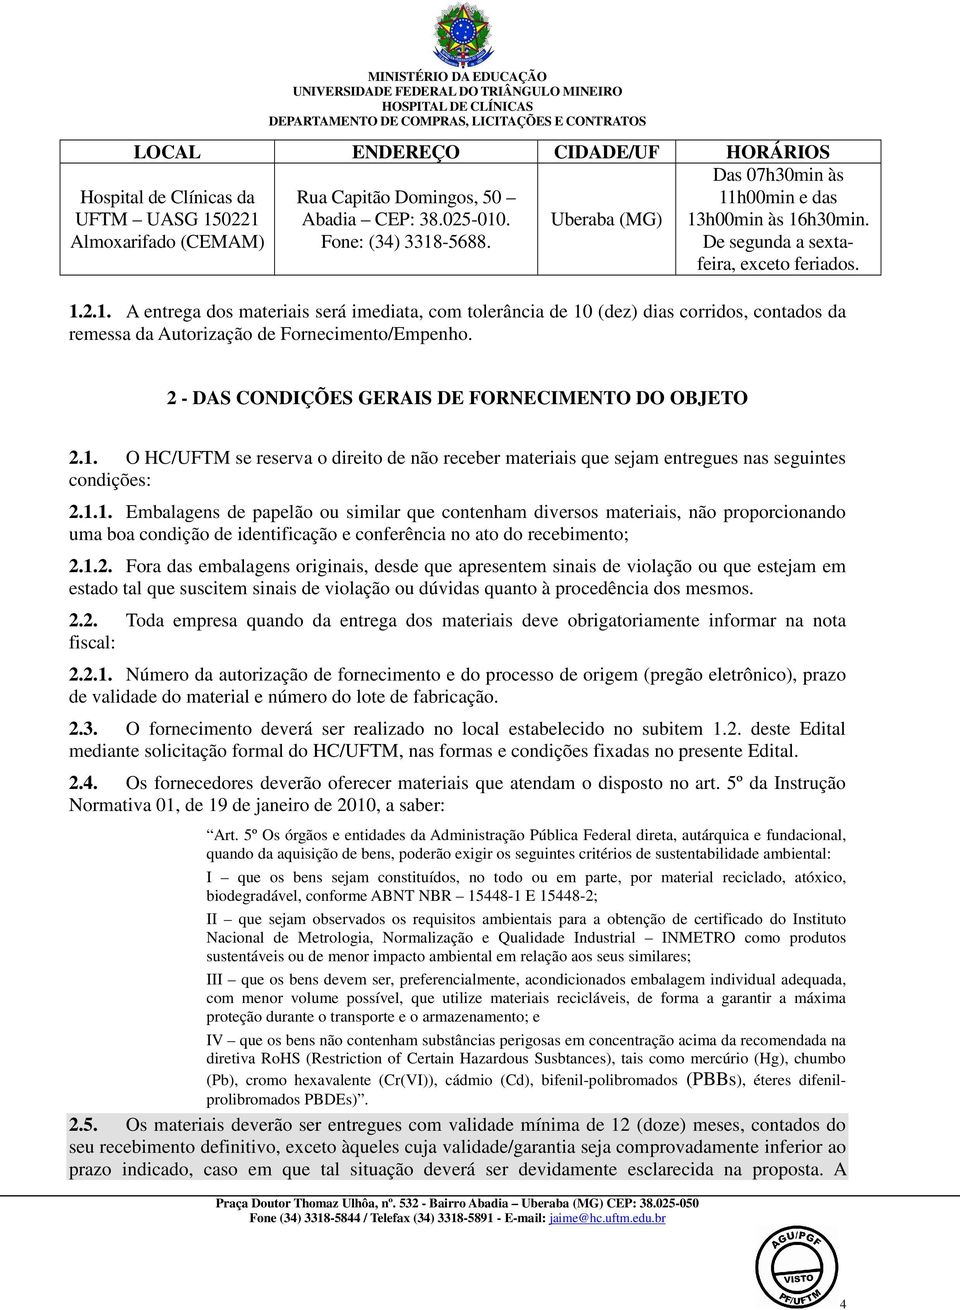 2 - DAS CONDIÇÕES GERAIS DE FORNECIMENTO DO OBJETO 2.1.